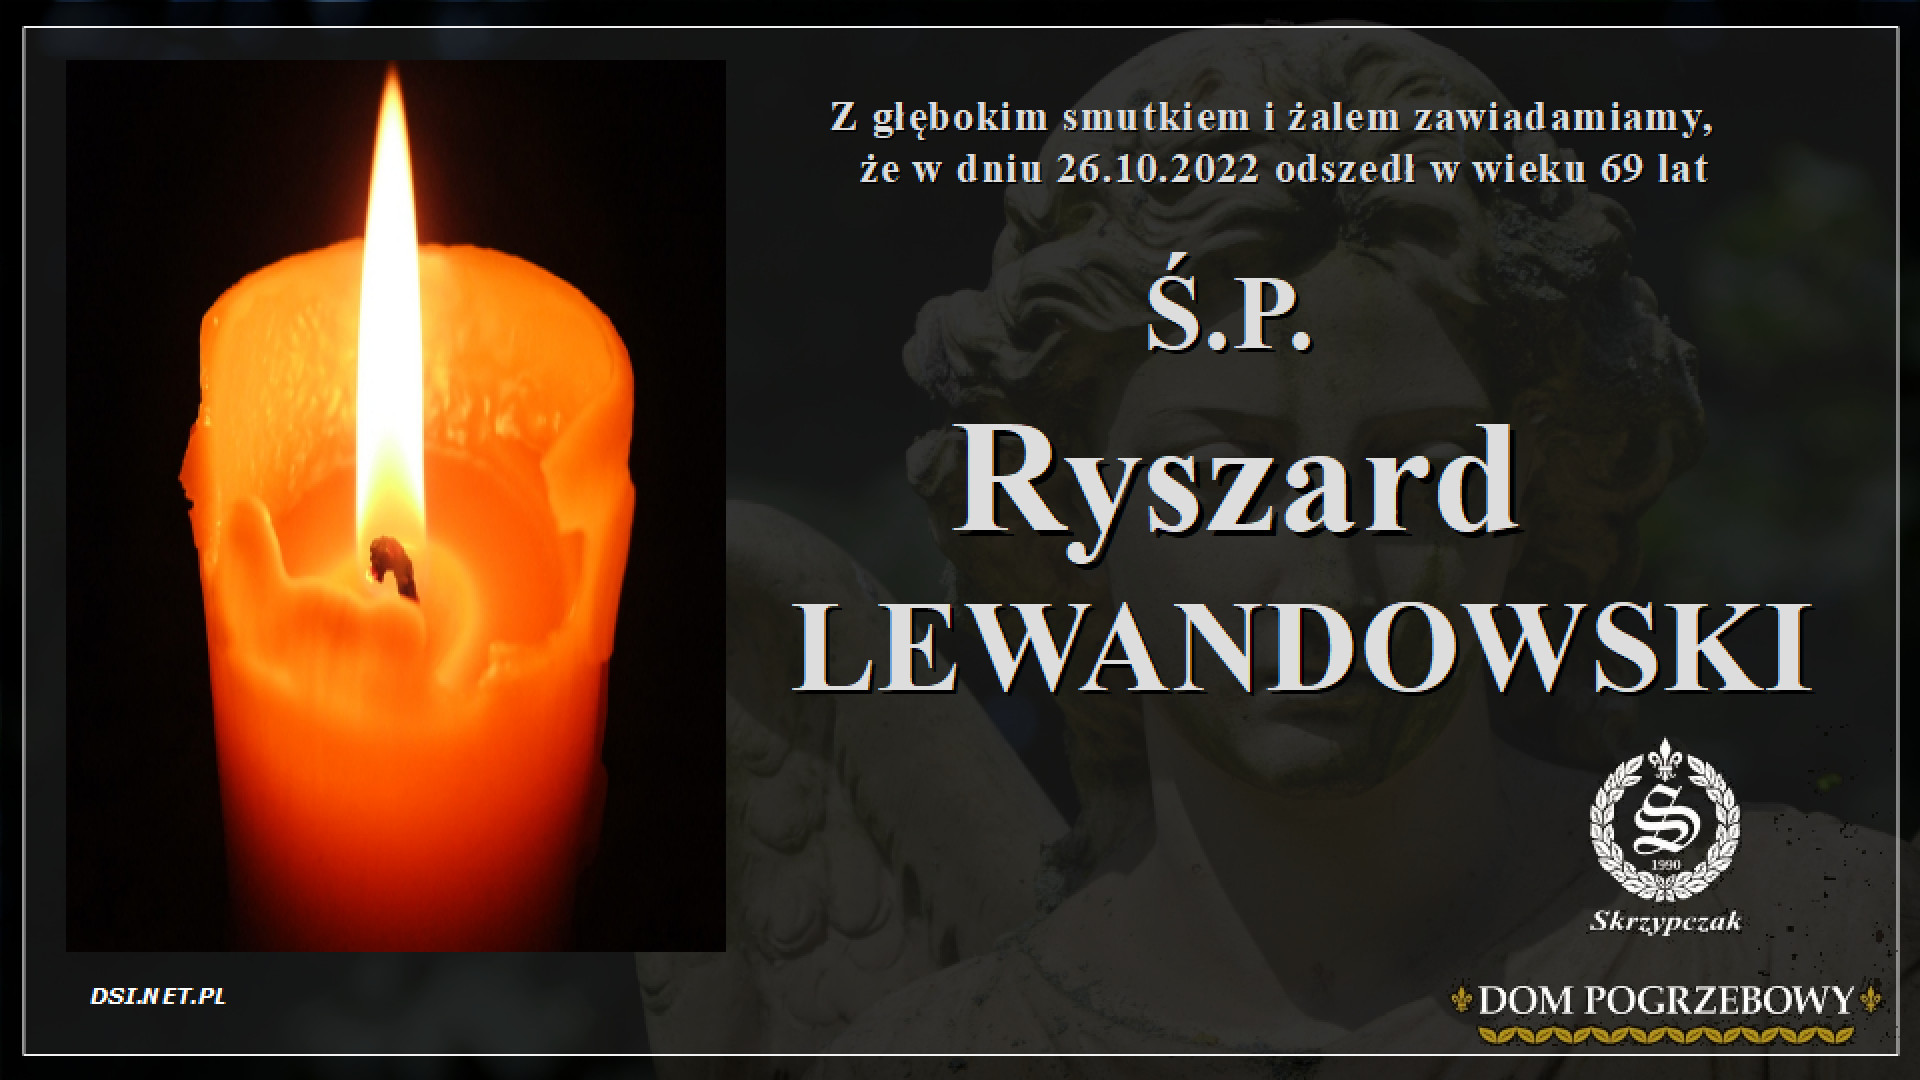 Ś.P. Ryszard Lewandowski